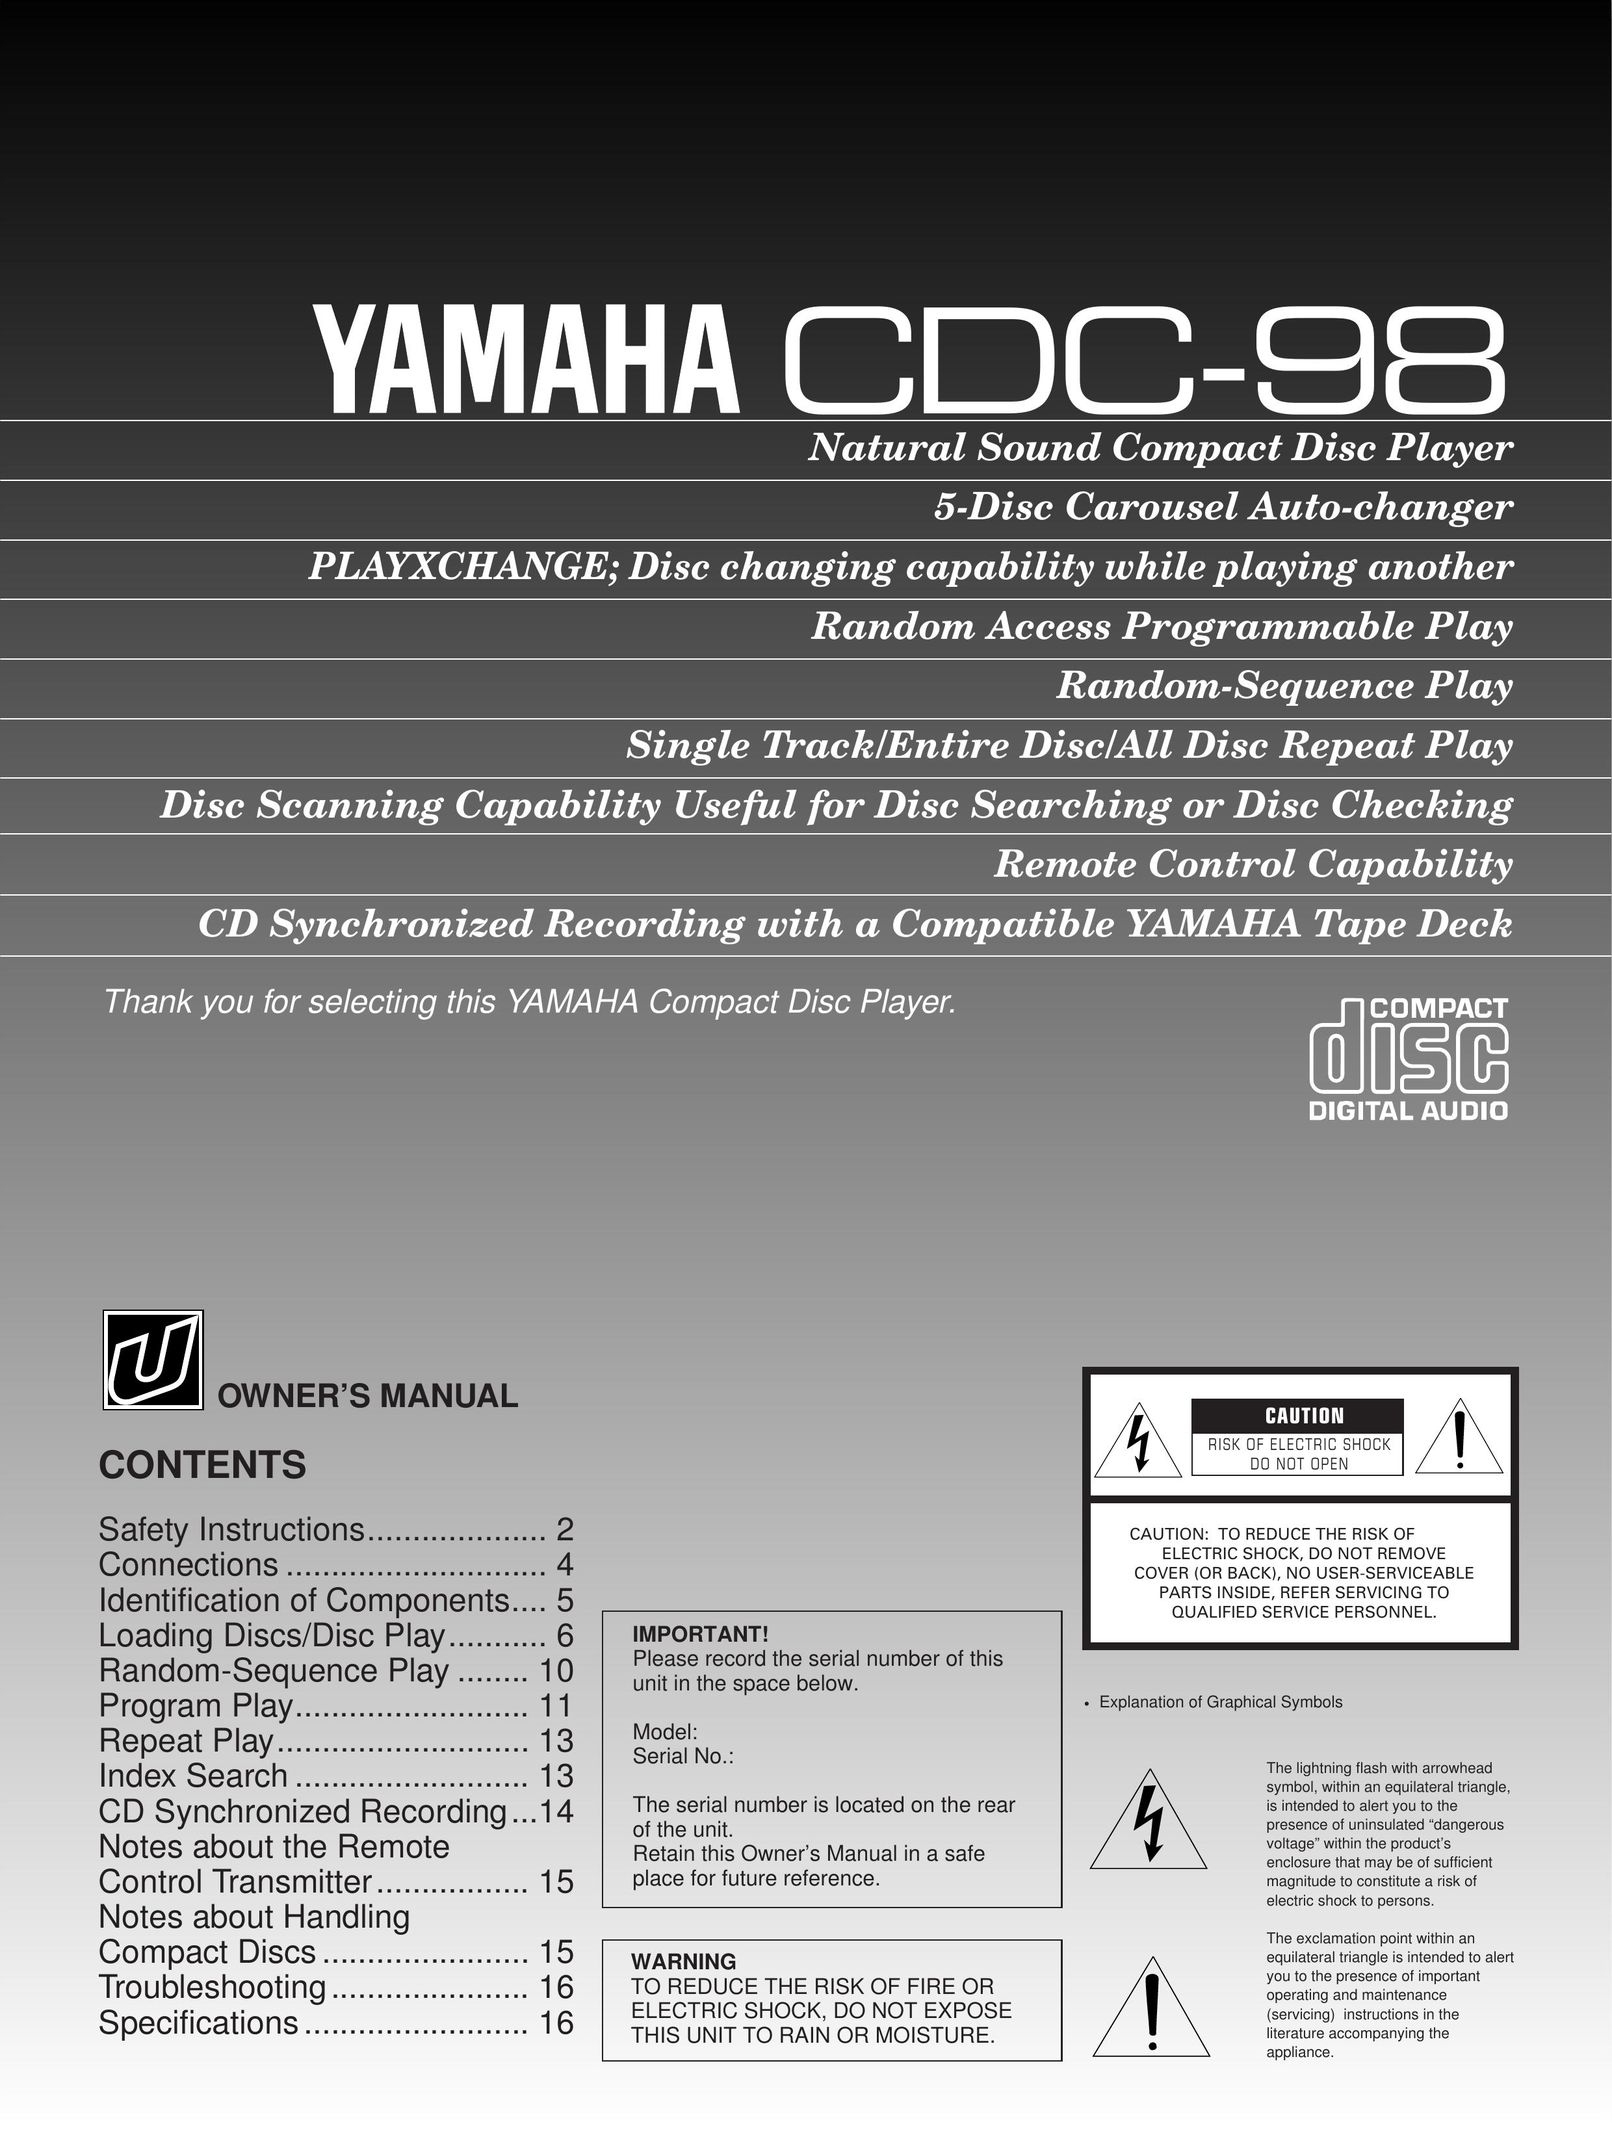 Yamaha CDC-98 CD Player User Manual